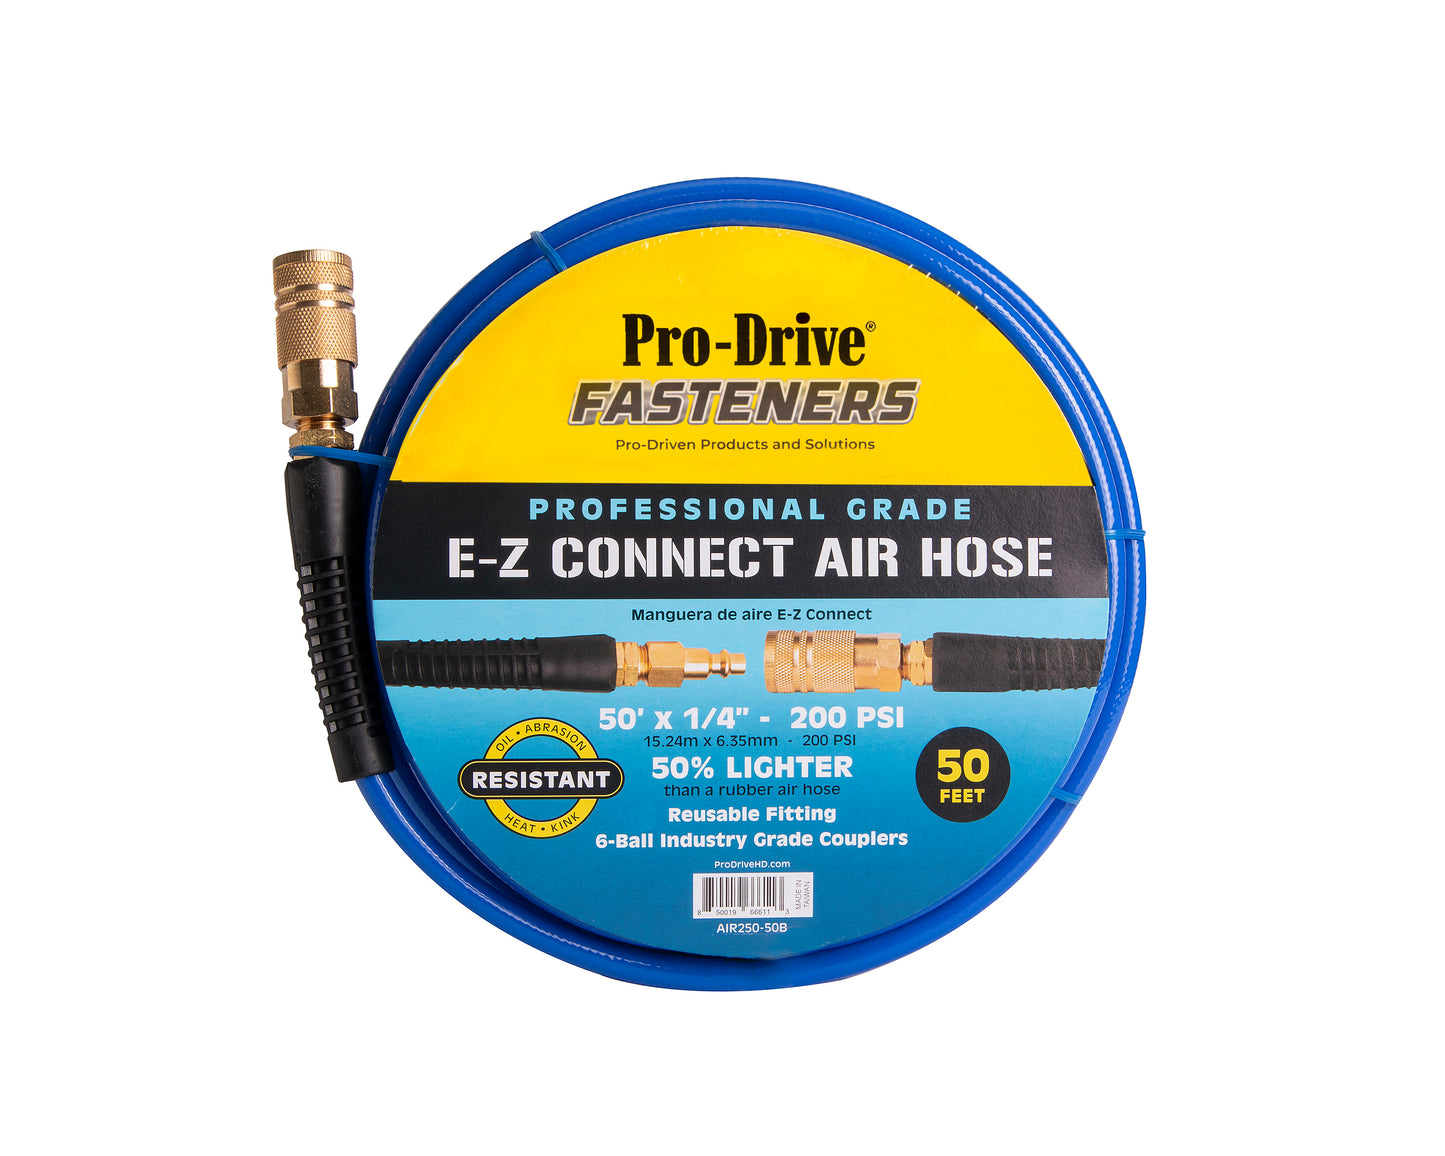 E-Z Connect Air Hoses